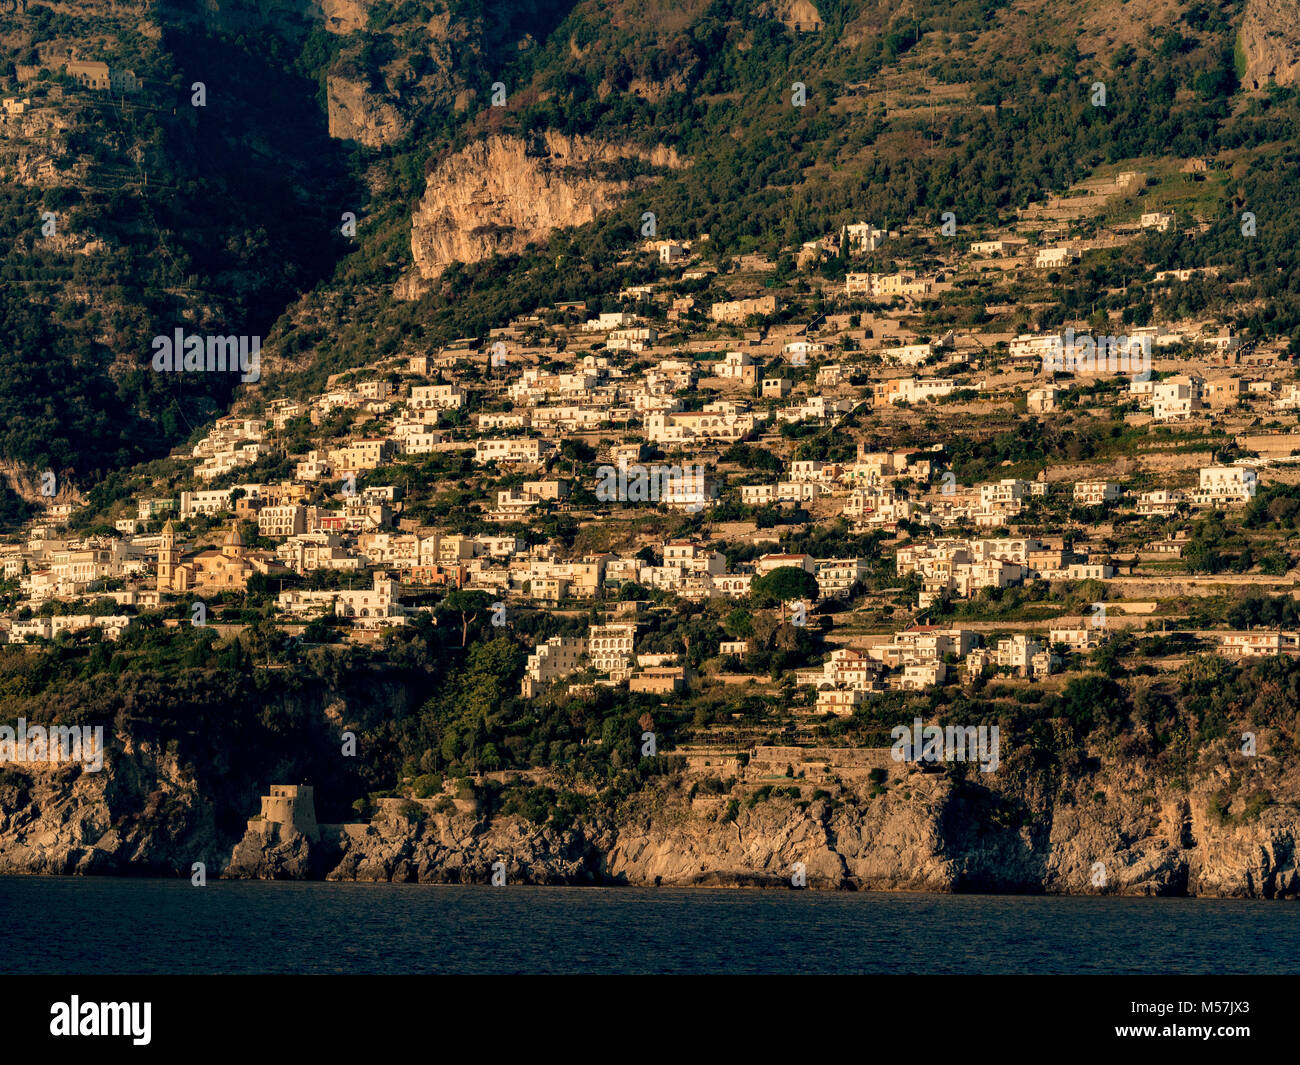 Praiano, une commune italienne de la province de Salerne dans la région Campanie en Italie du sud-ouest situé sur la côte amalfitaine. Banque D'Images